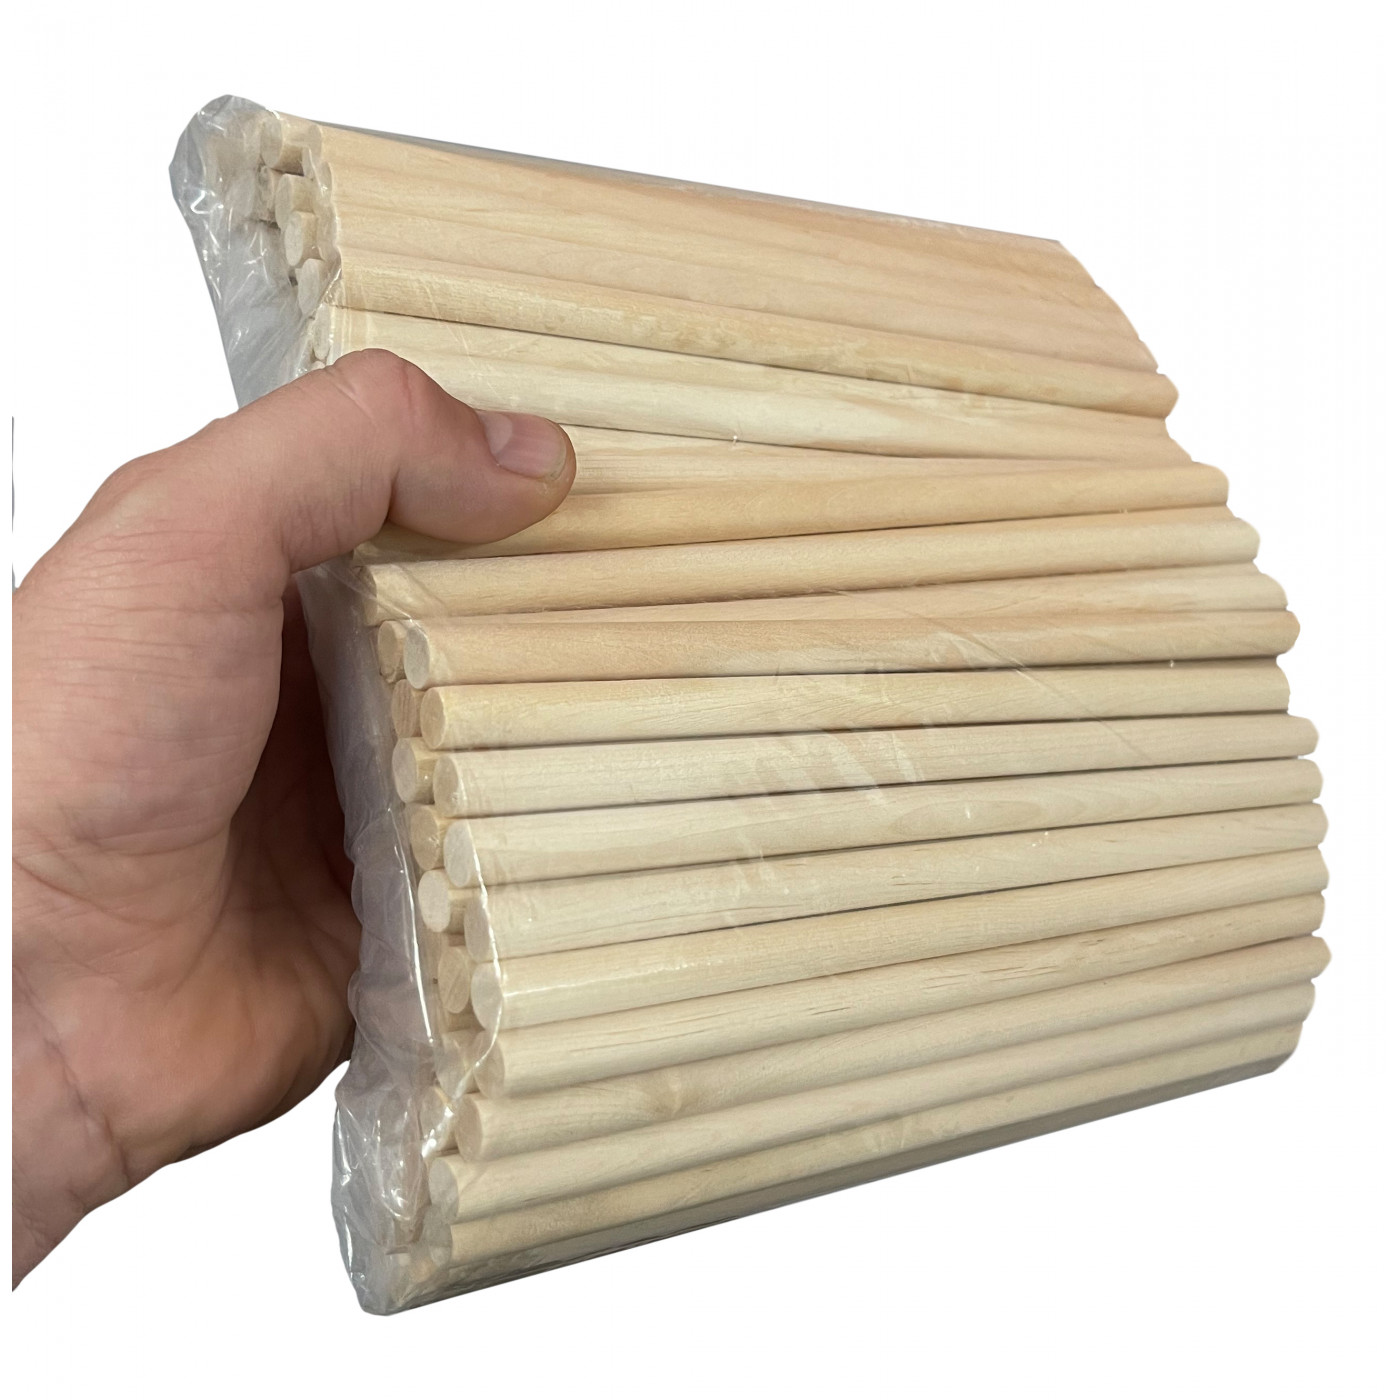 Juego de 100 palos de madera (30 cm de largo, 10 mm de